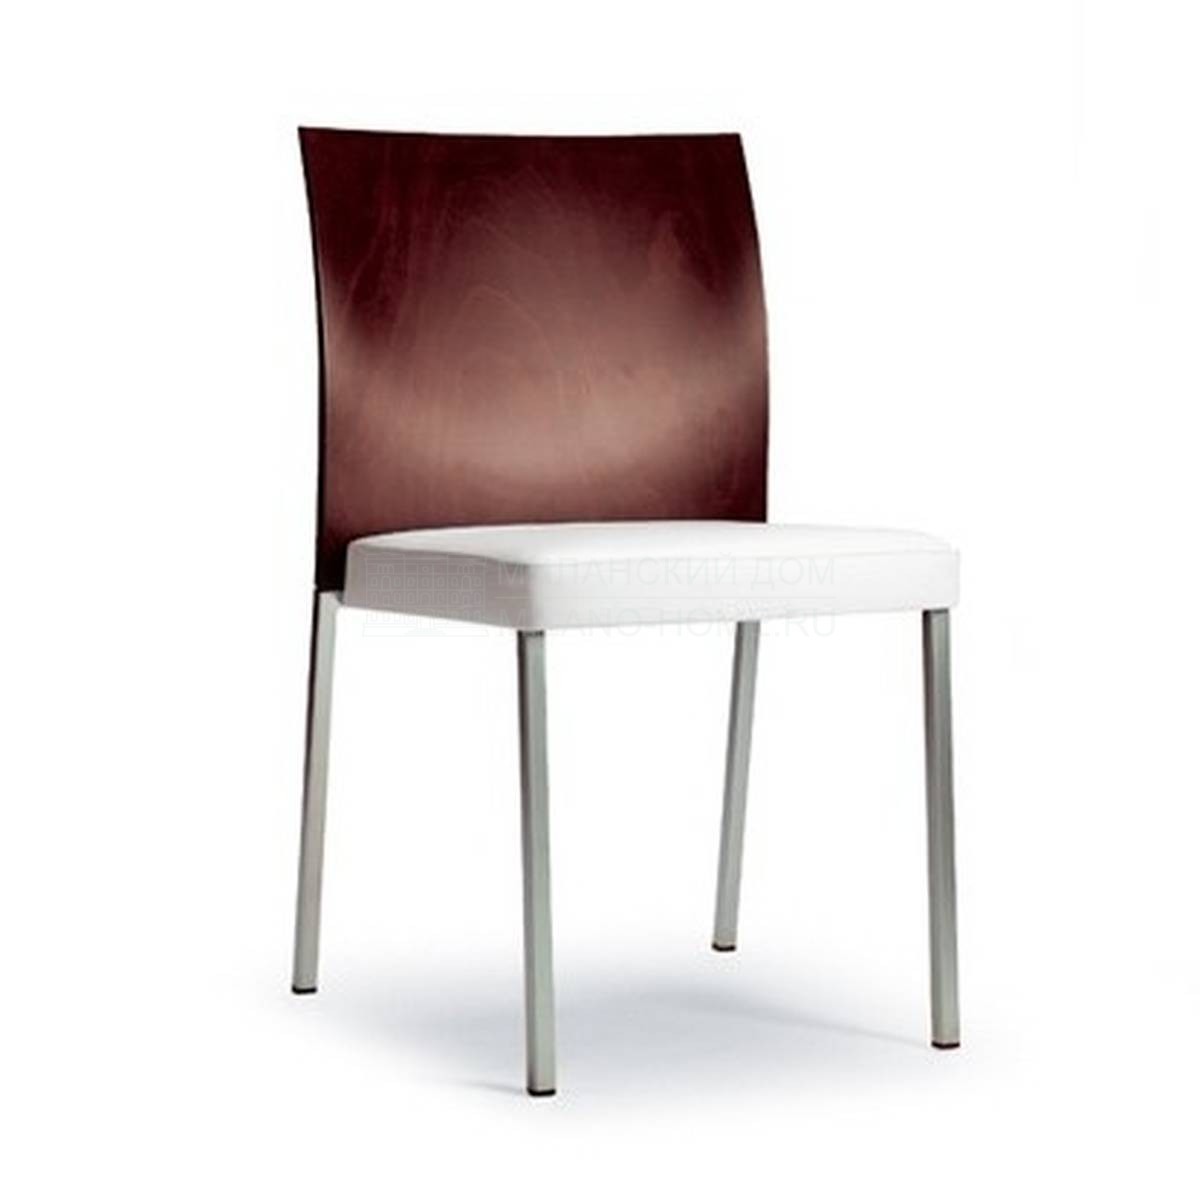 Стул Brand chair из Италии фабрики TONON